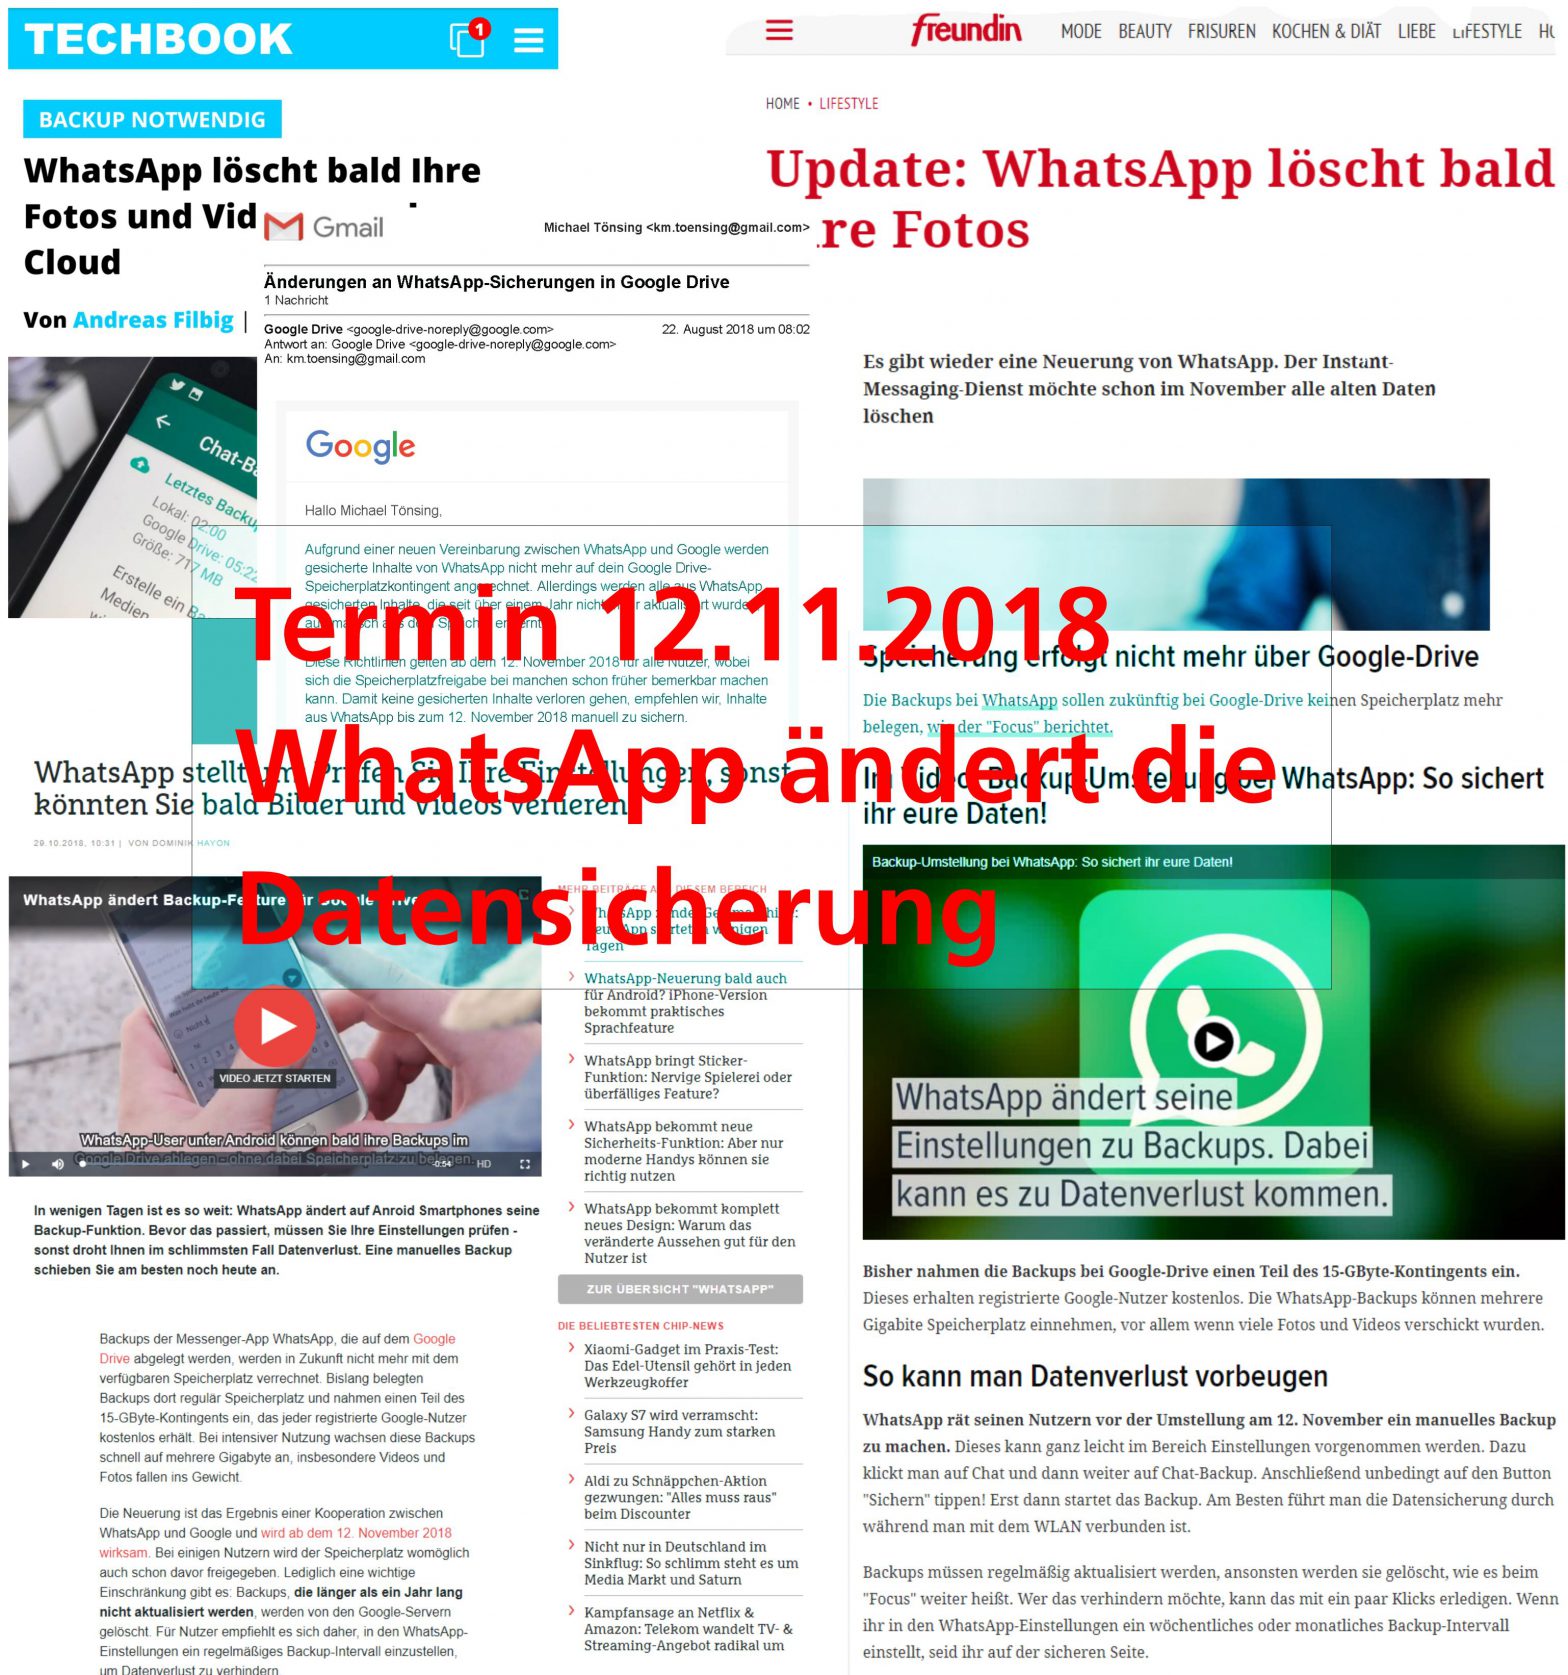 Bei WhatsApp ändern sich die Einstellungen zu den Backups. Ab 12. November 2018 ist alles anders. Vor diesem Datum empfehle ich, ein Backup zu erstellen.  MT MARKETEER 2018-10-30, Michael Tönsing